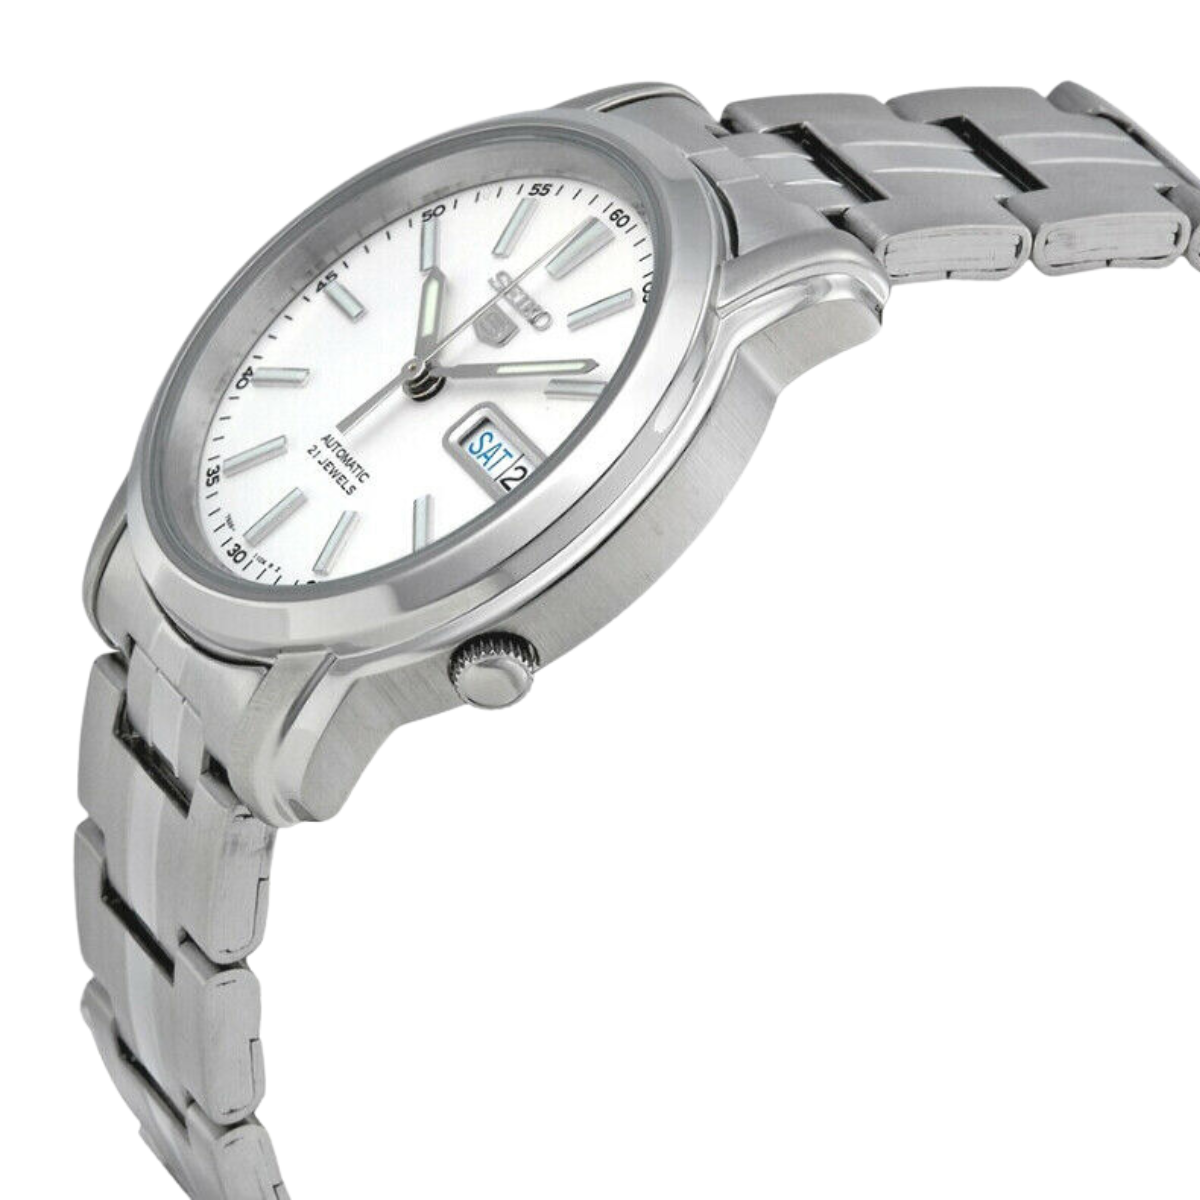 นาฬิกา SEIKO 5 Series 21 Jewels Men's Watch รุ่น SNKL75 SNKL75K SNKL75K1 Automatic